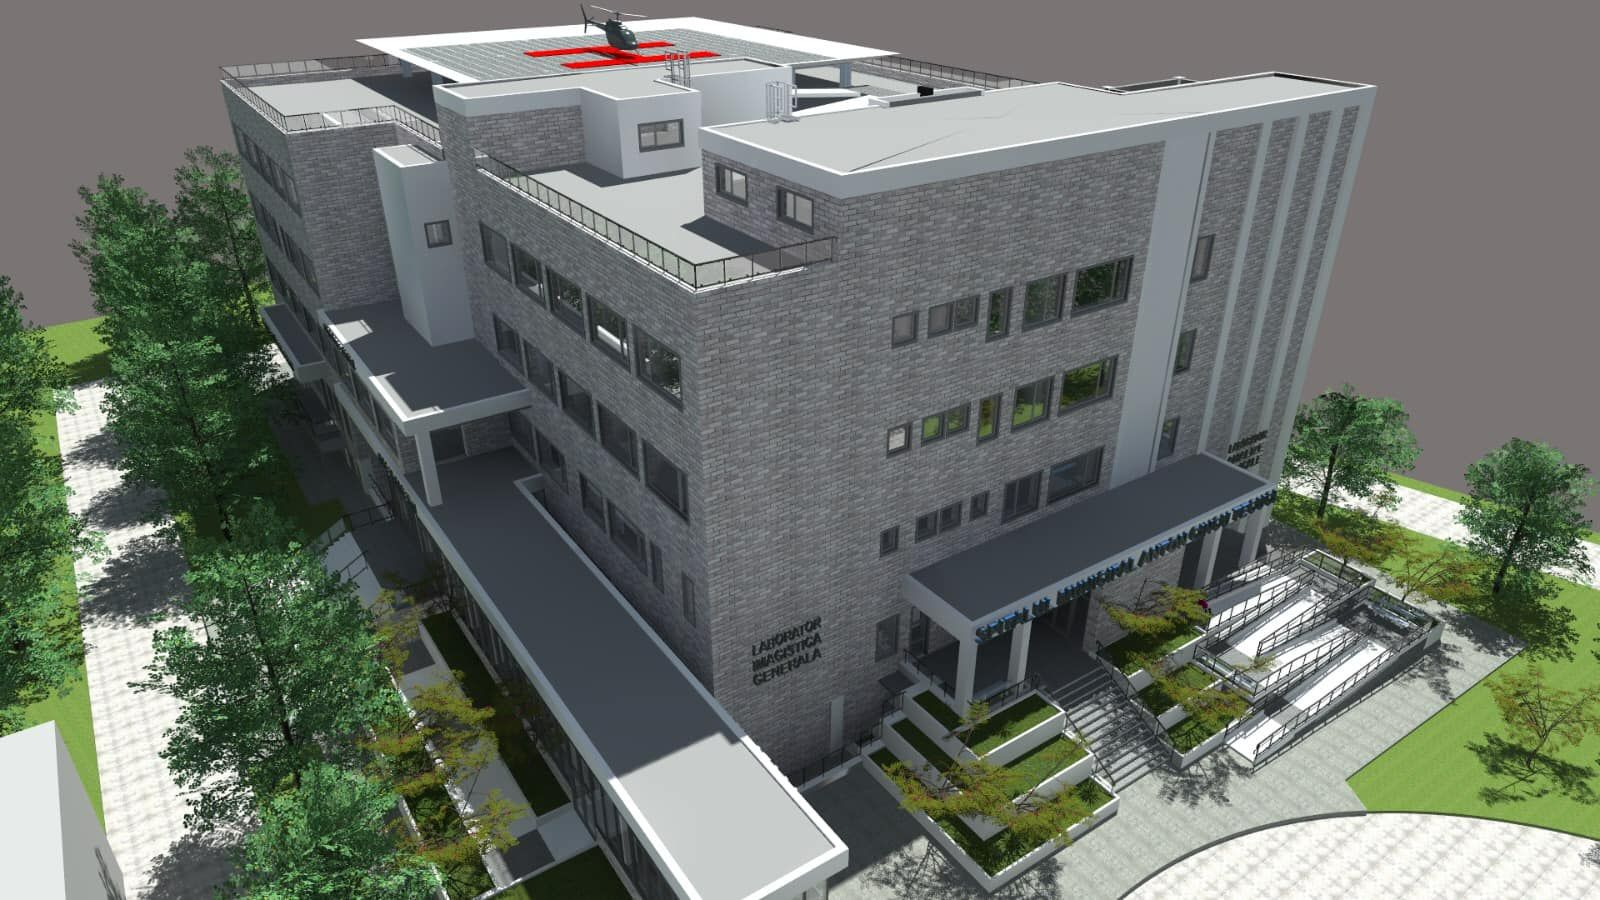 Spitalul Municipal „Anton Cincu” Tecuci va avea o clădire nouă cu heliport